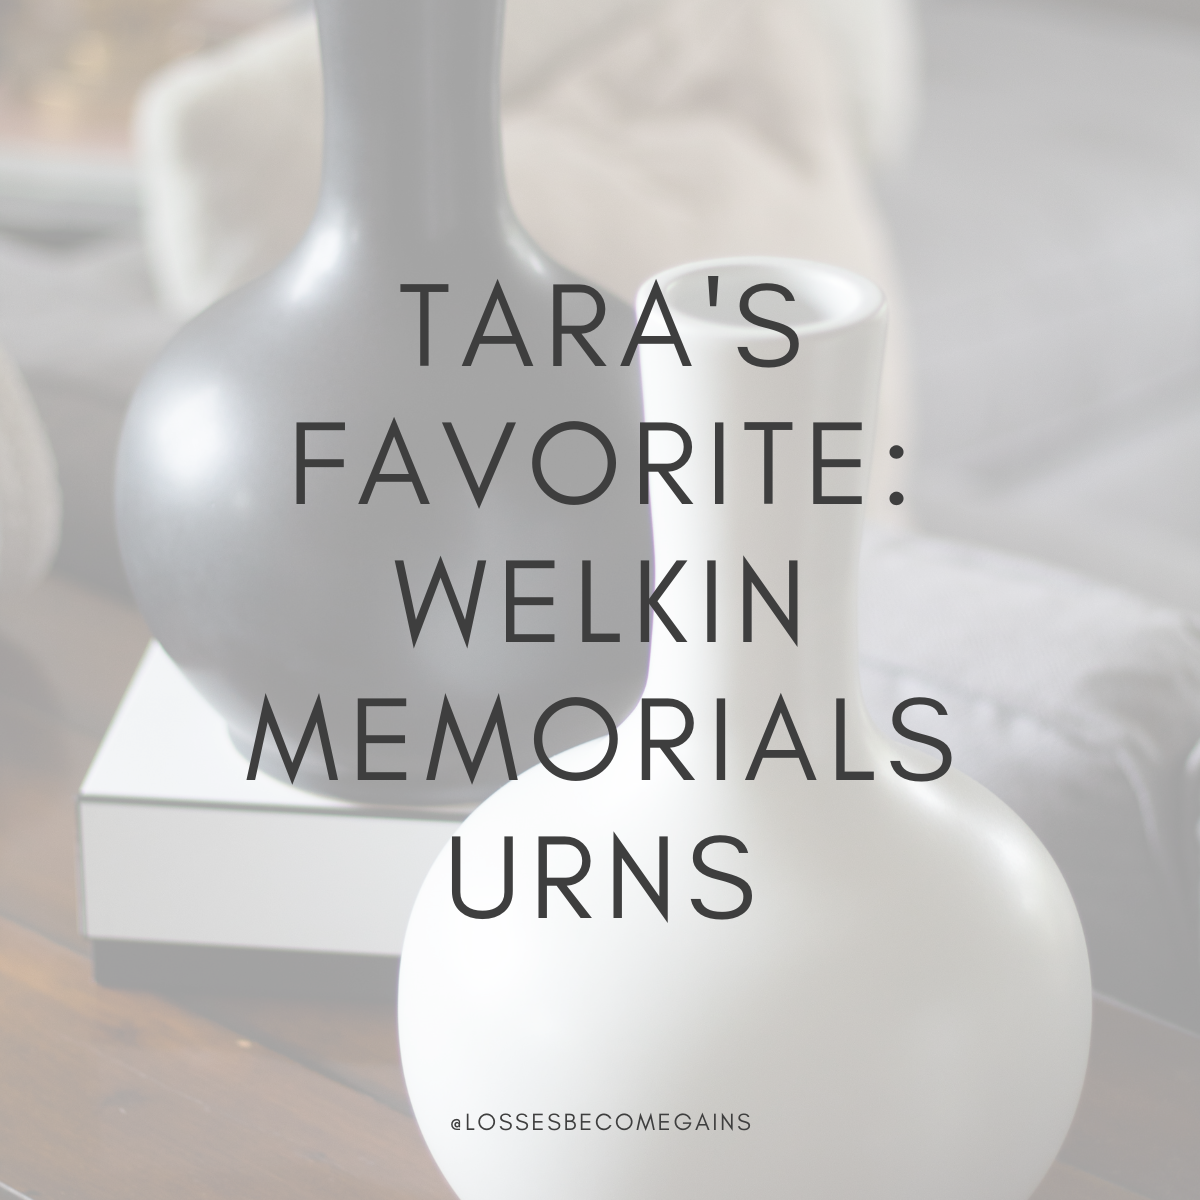 Tara's favorite: welkin memorials urns